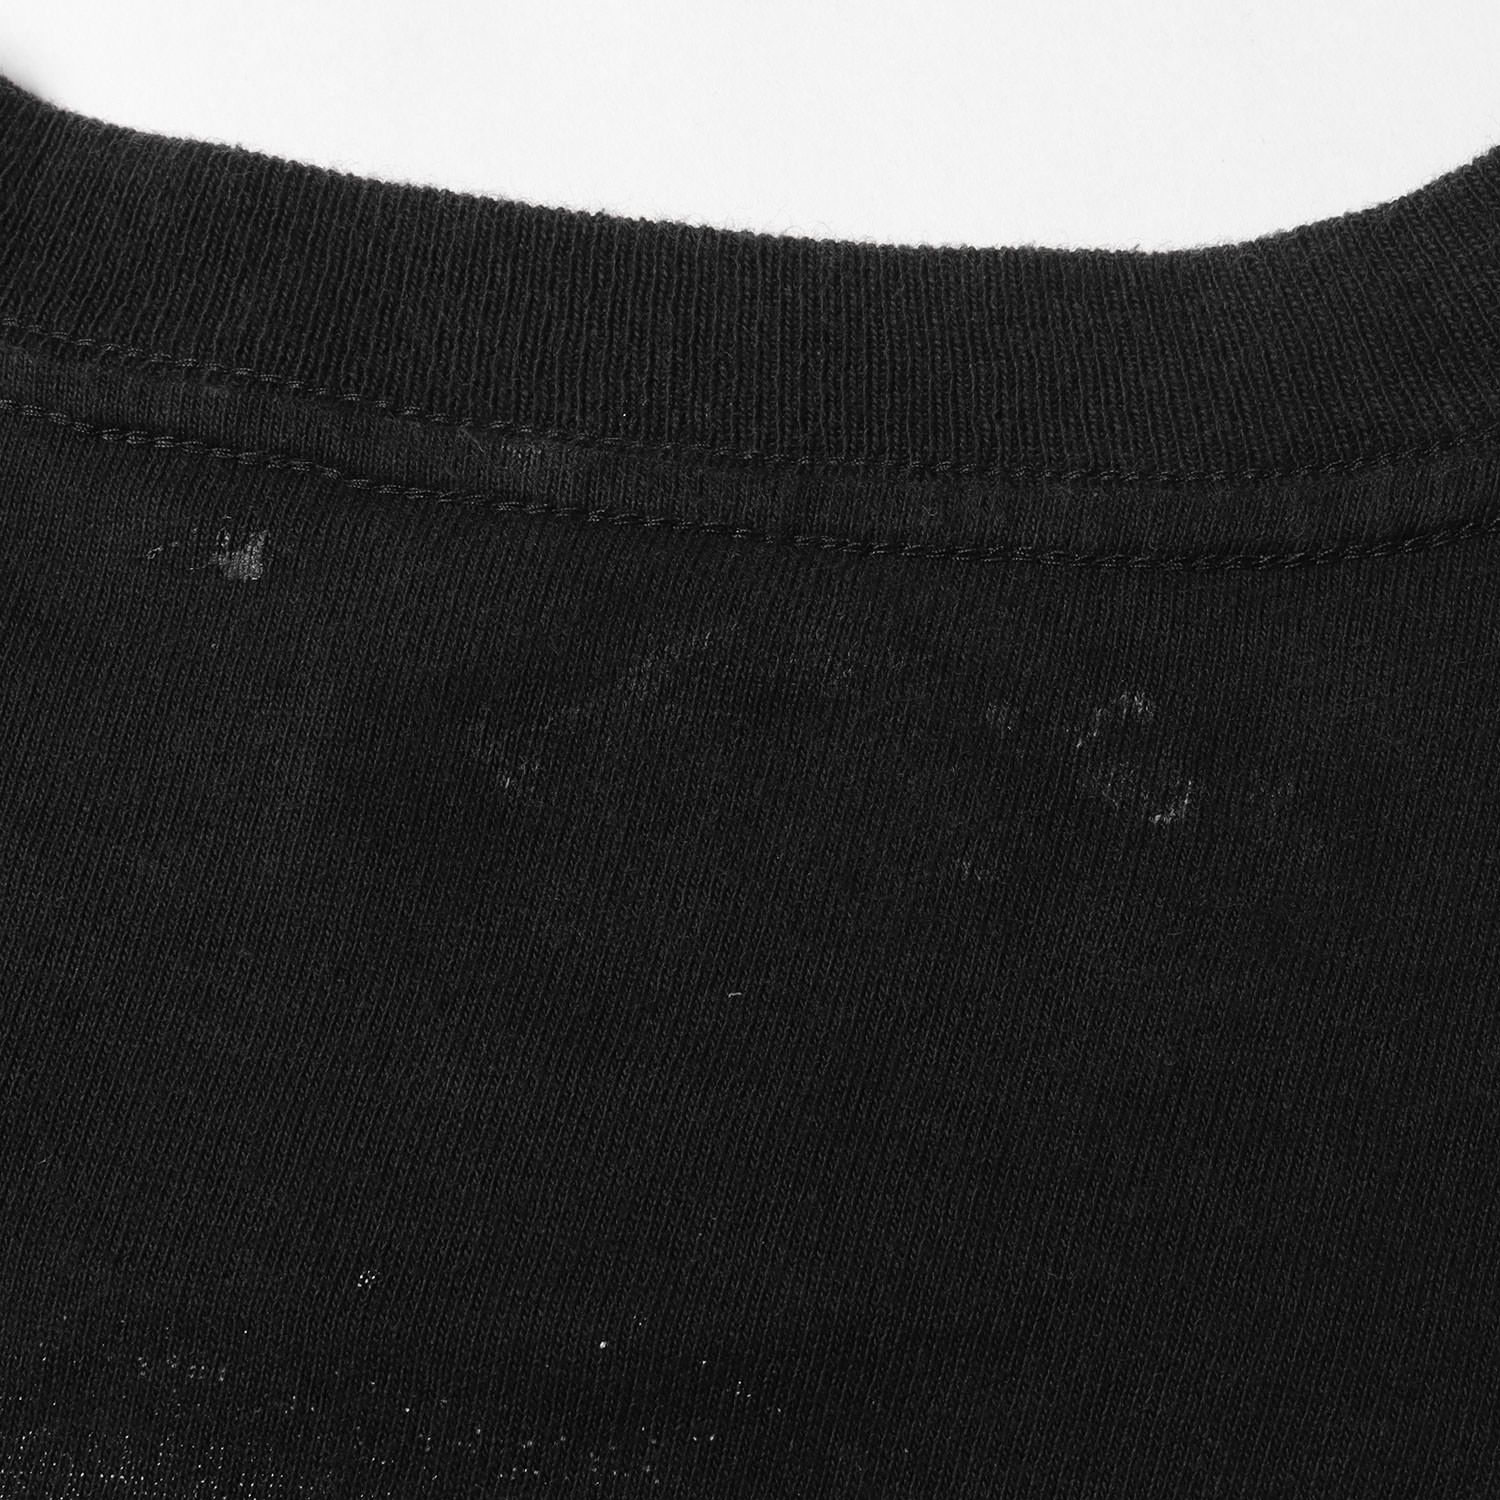 90s サンフランシスコ 全面転写フォト クルーネック 半袖 Tシャツ 90年代 USA製 BAY SIDE ベイサイド ブラック 黒 L アメカジ トップス カットソー 90s - 00s ヴィンテージ Vintage / Used【メンズ】